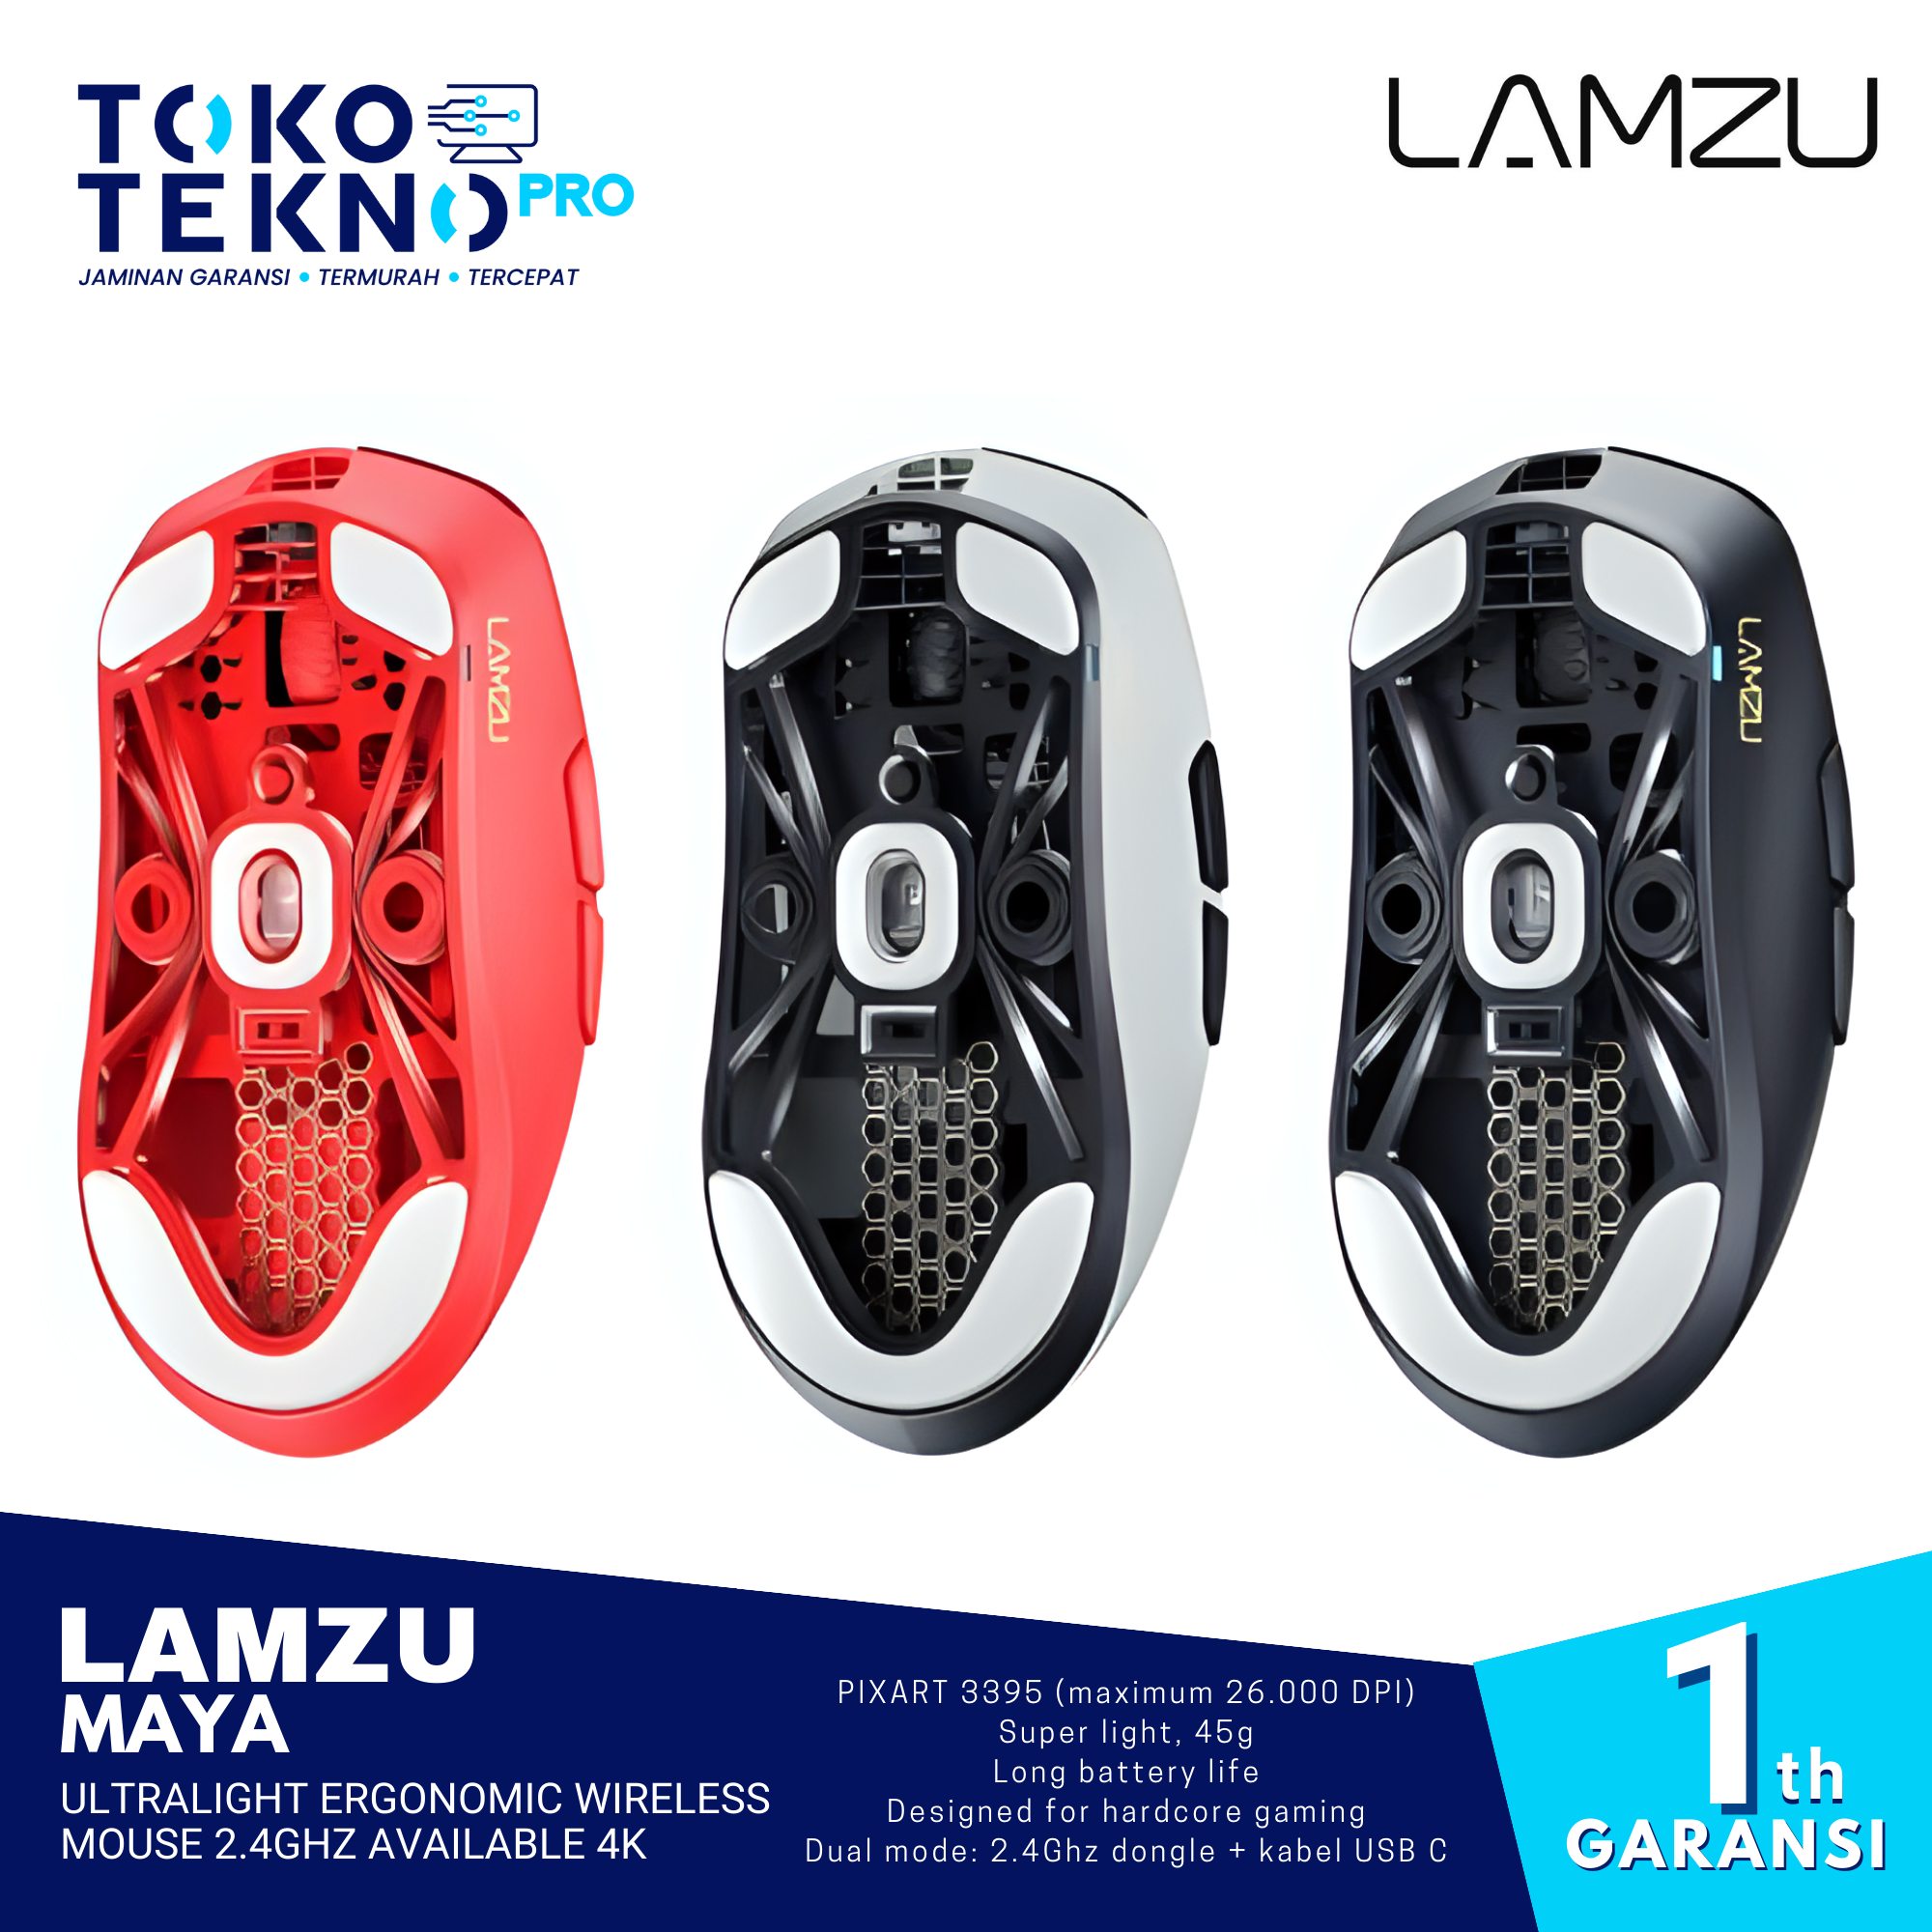 Lamzu Maya Ultralight Ergonomic Wireless Mouse 2.4Ghz Available 4K